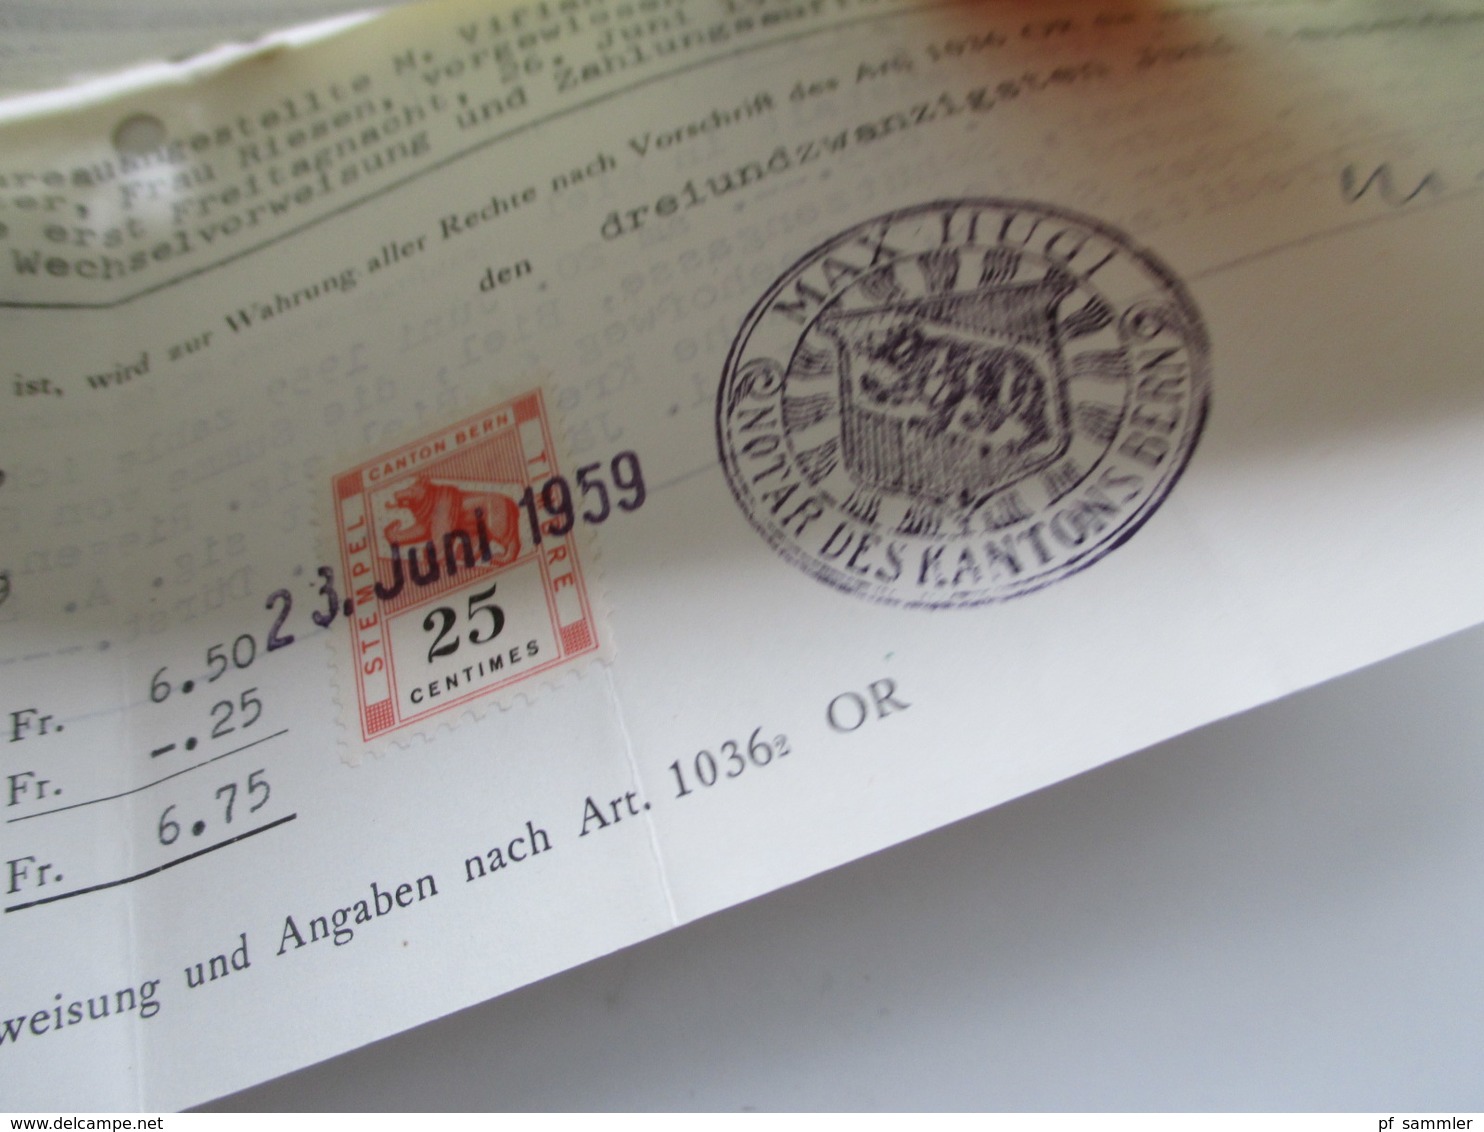 Schweiz 1900 - 1966 Wechsel / Dokumente viele mit Stempelmarken / Fiskalmarken. Insgesamt ca. 100 Stück! Revenues